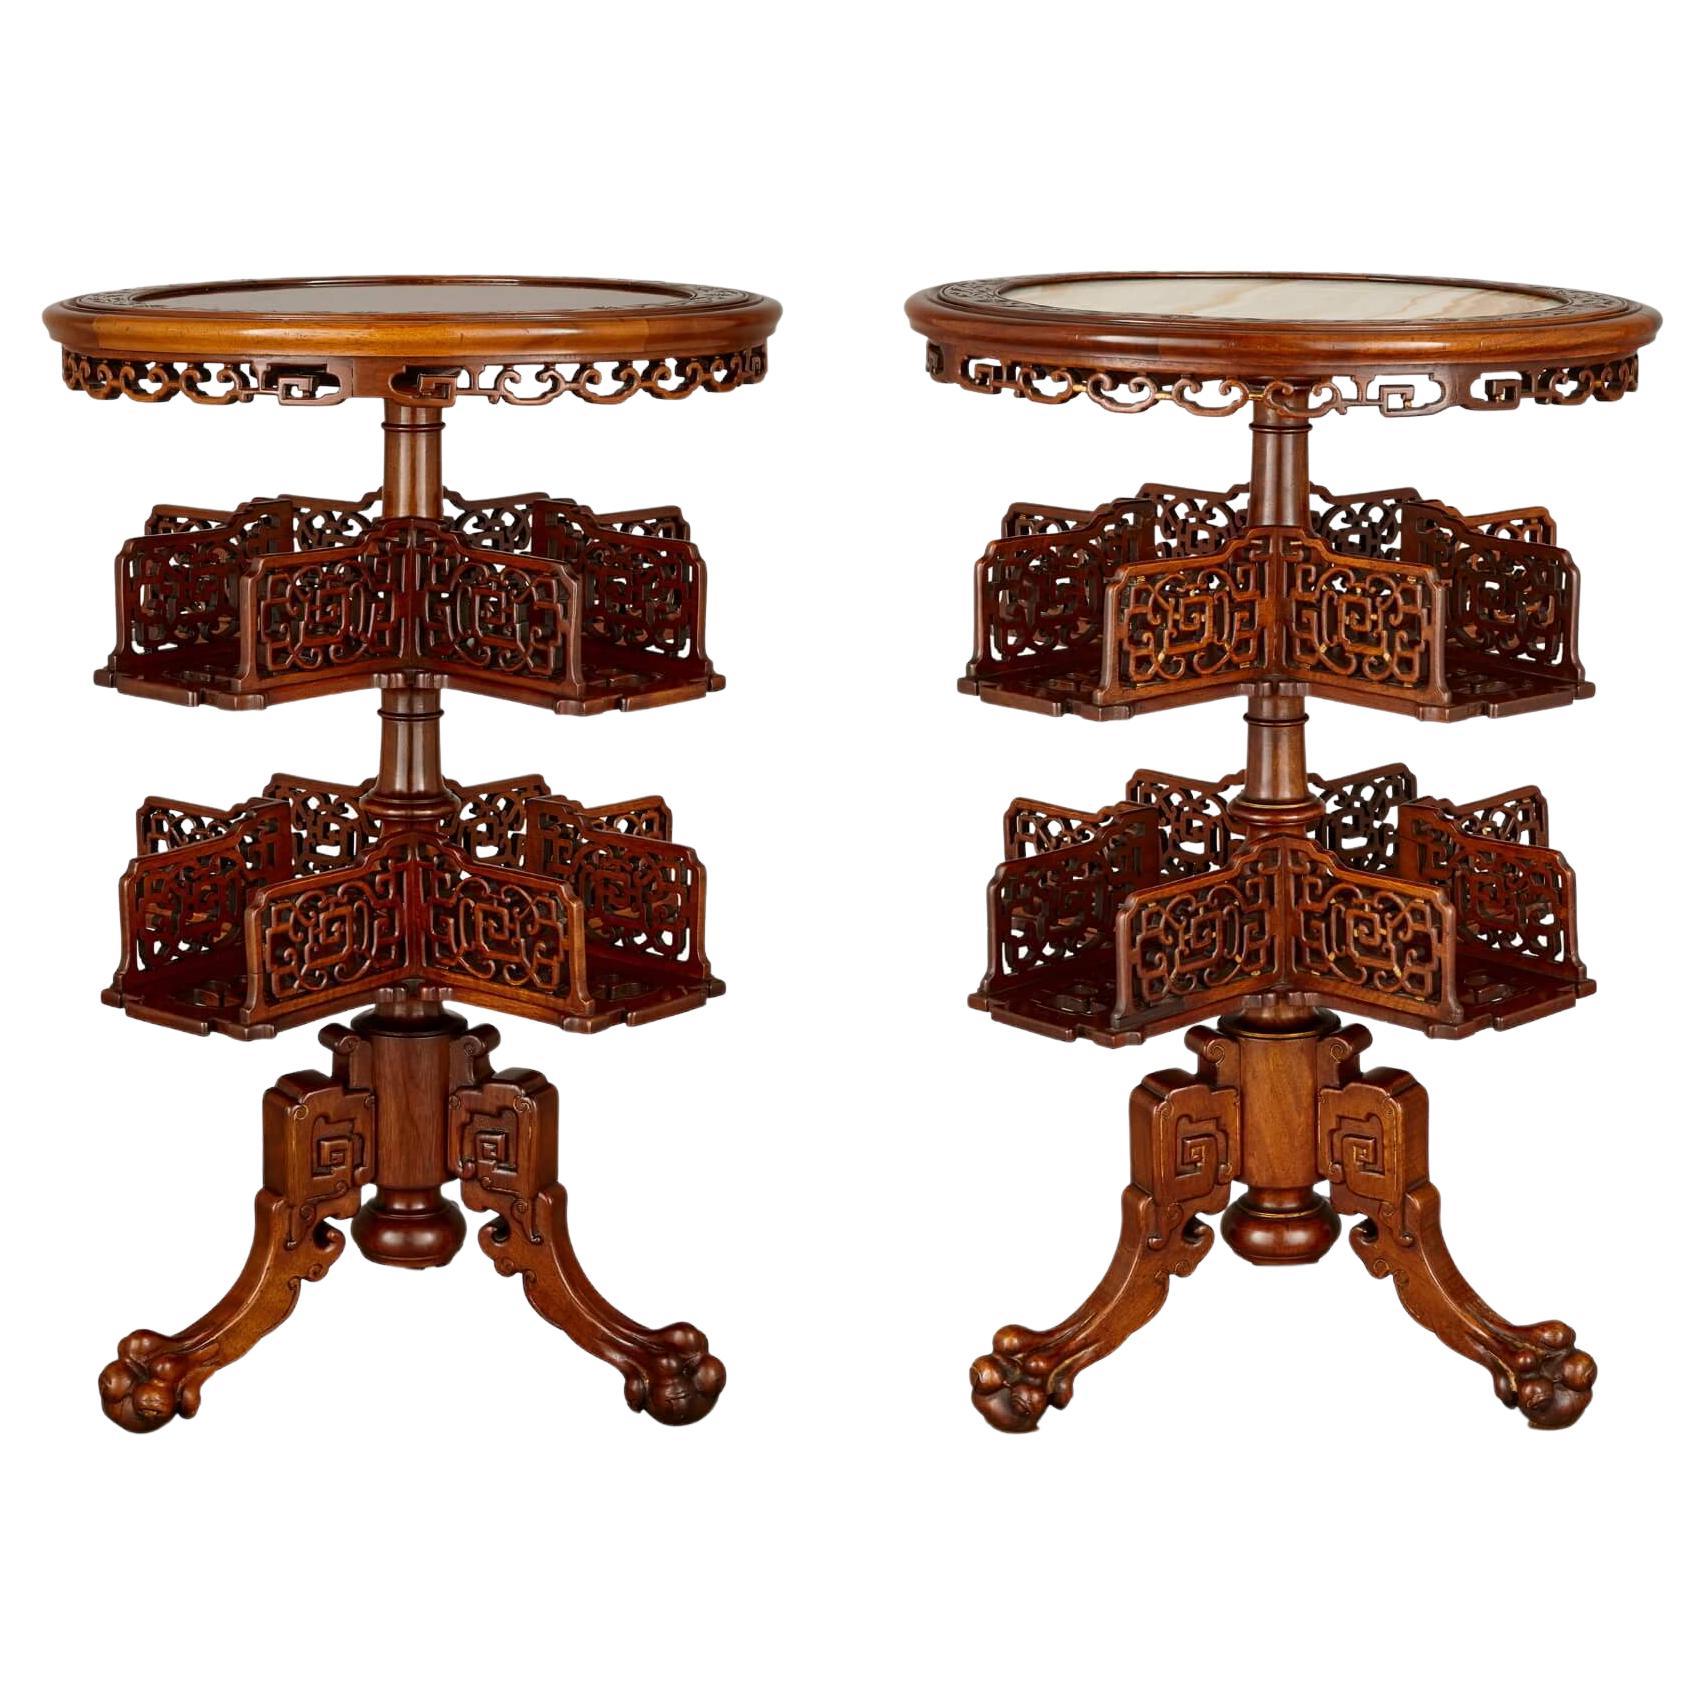 Deux tables chinoises rondes en bois de feuillus marqueté